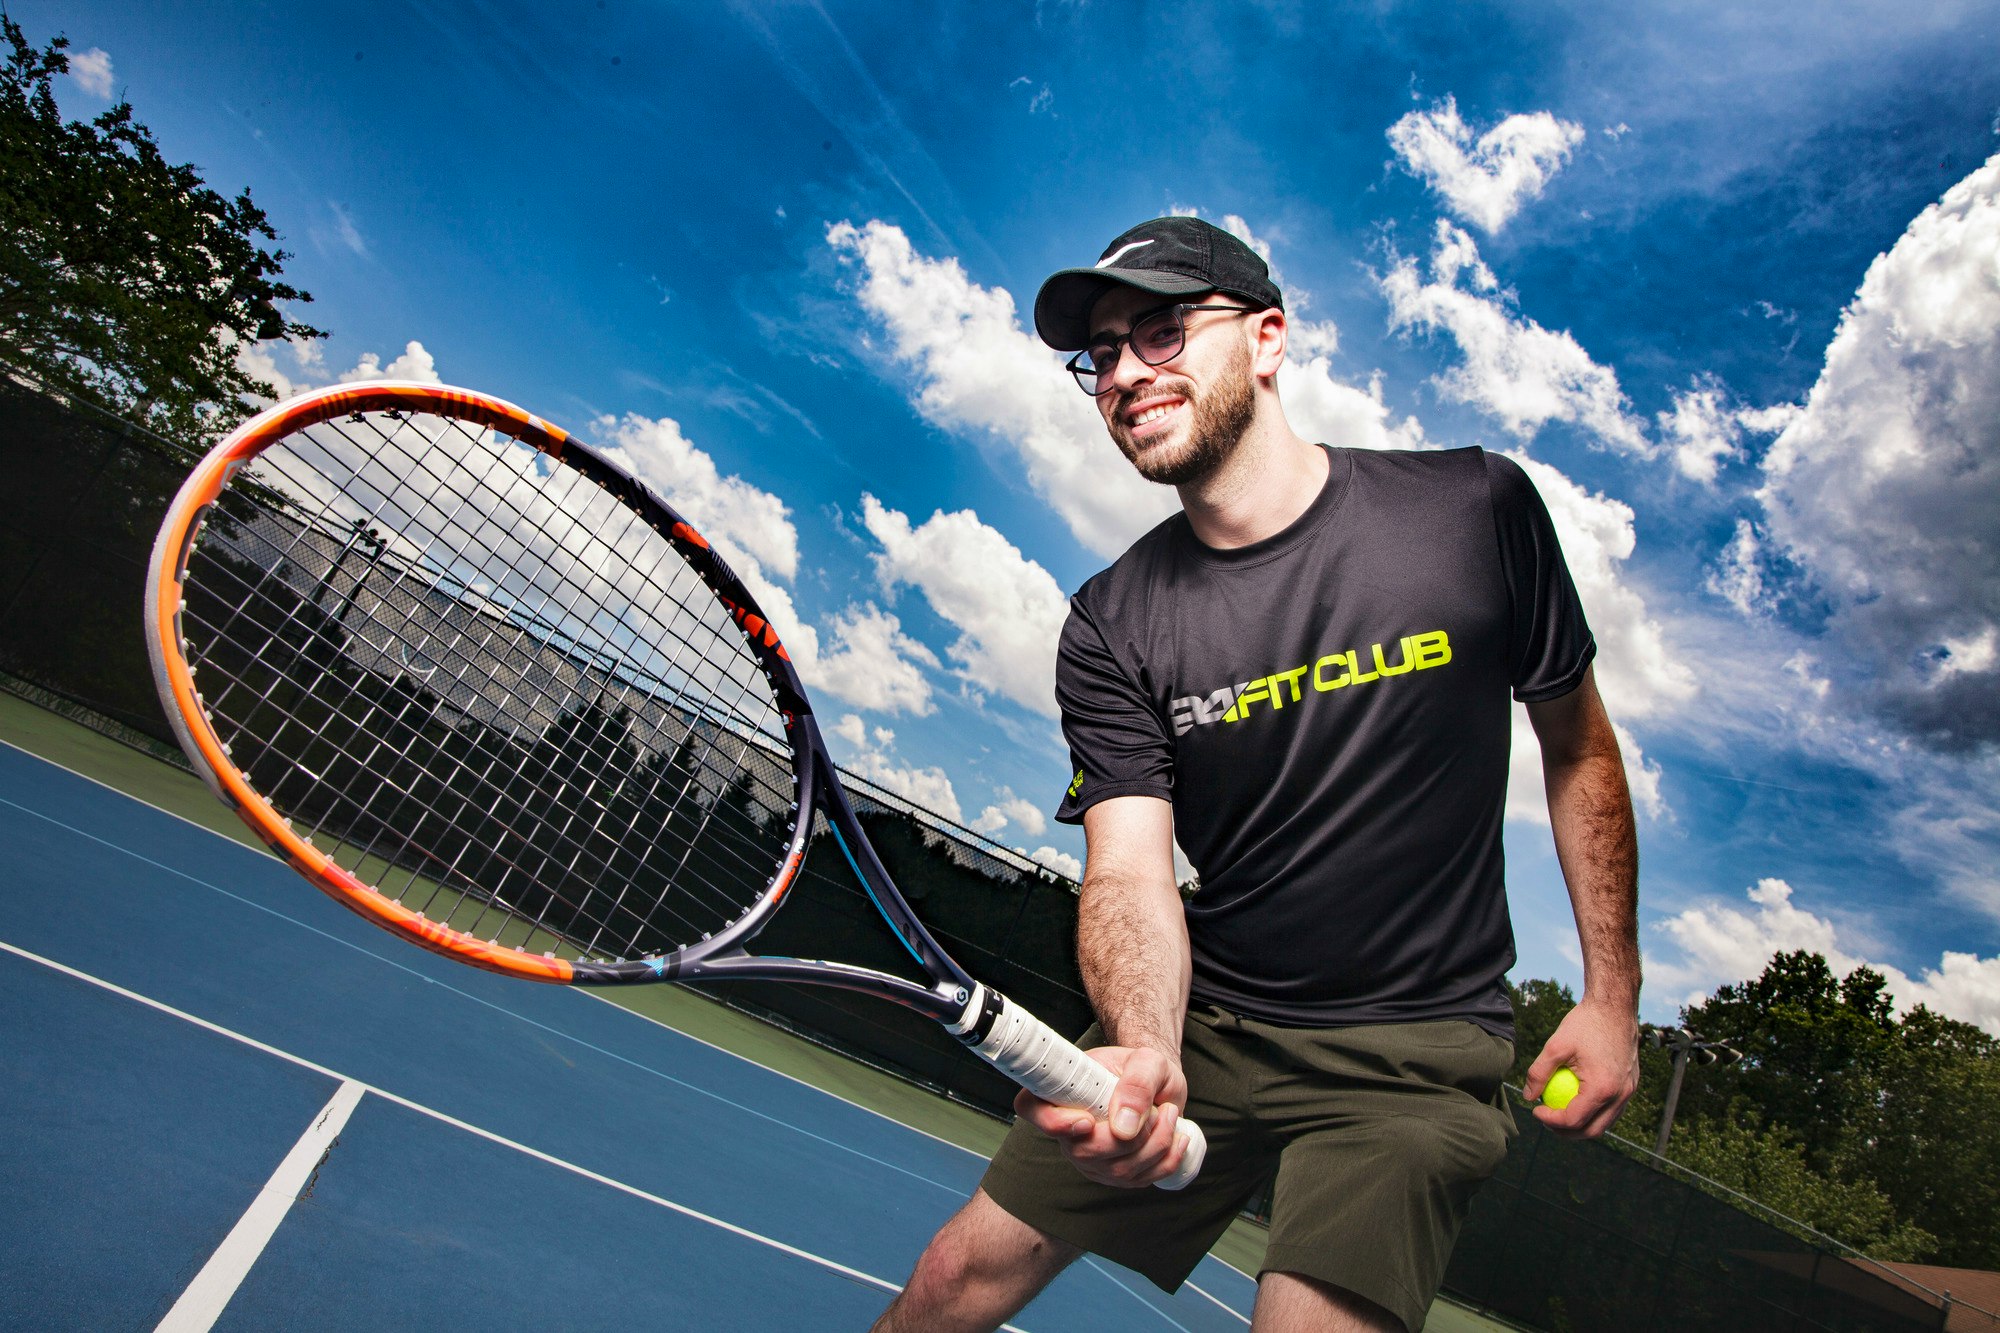 David K. teaches tennis lessons in Duluth, GA